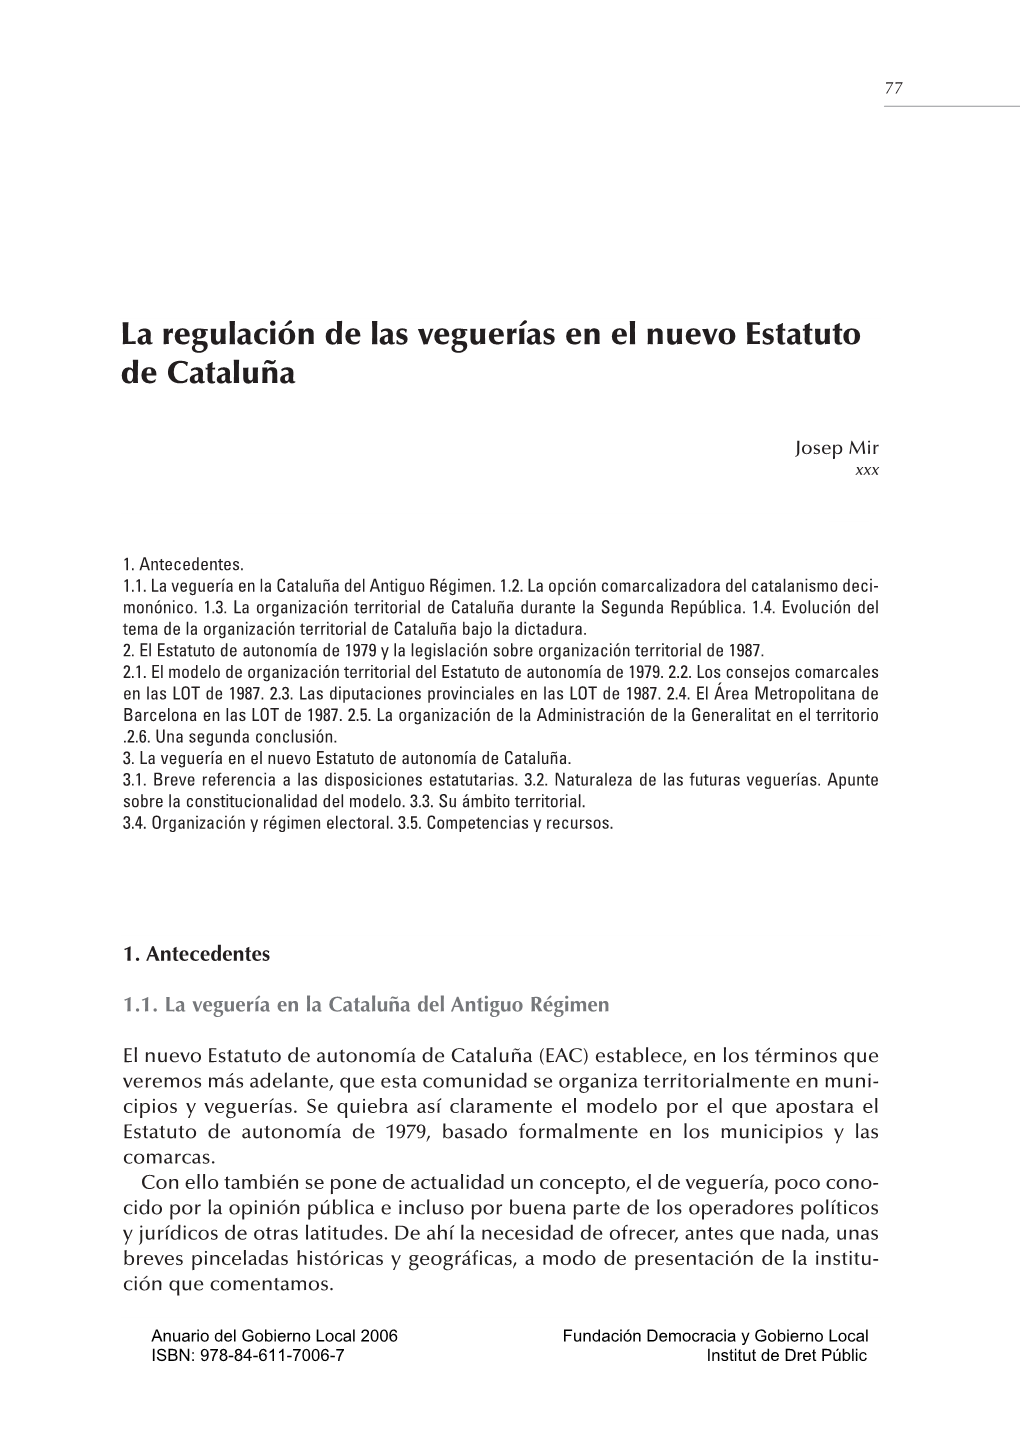 La Regulación De Las Veguerías En El Nuevo Estatuto De Cataluña